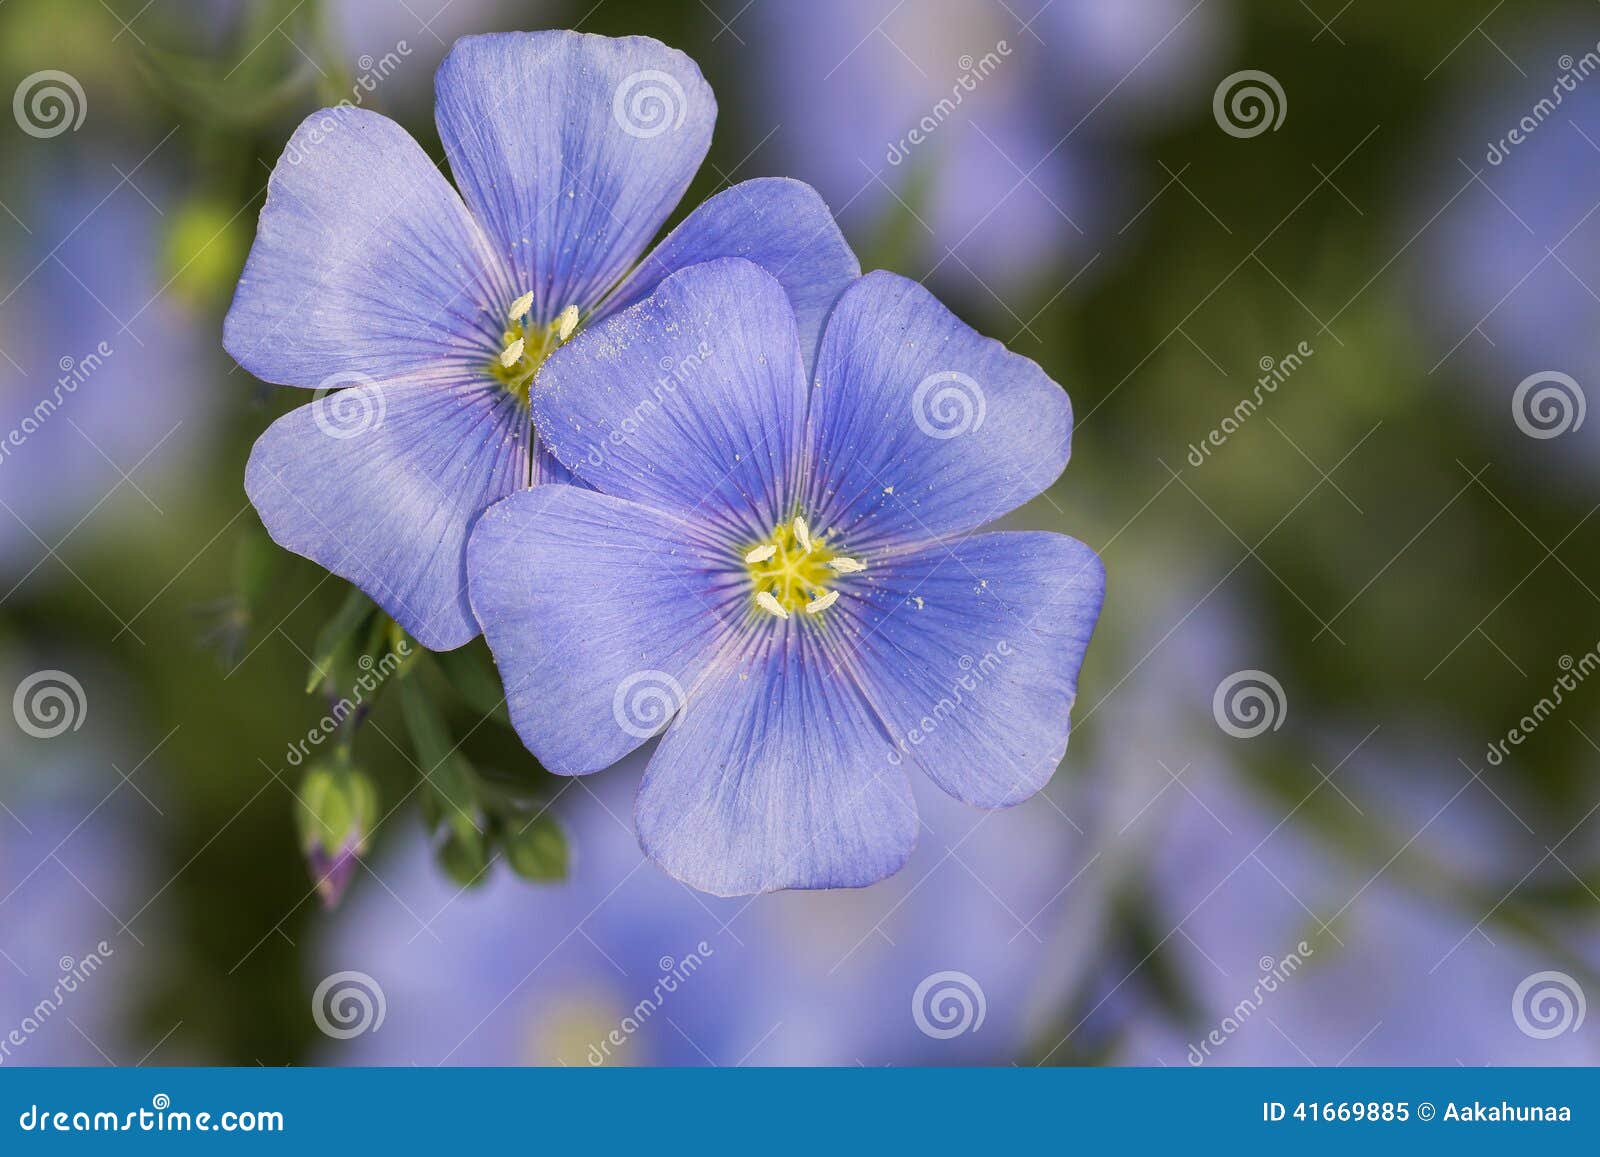 Cosmos bleu de floraison image stock. Image du fleur - 41669885